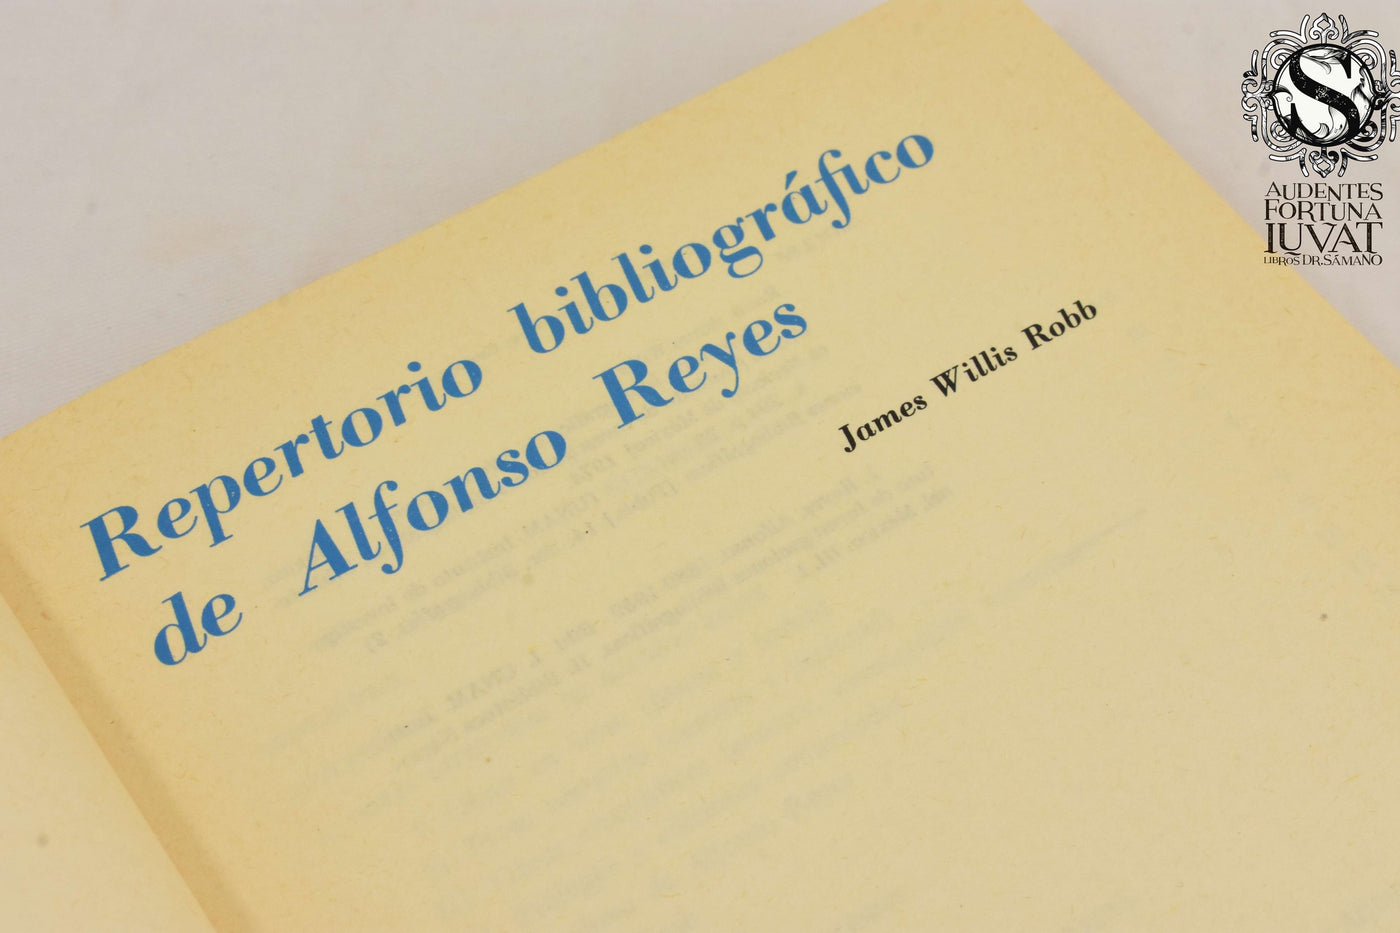 Repertorio Bibliográfico de Alfonso Reyes - JAMES WILLIS ROBB